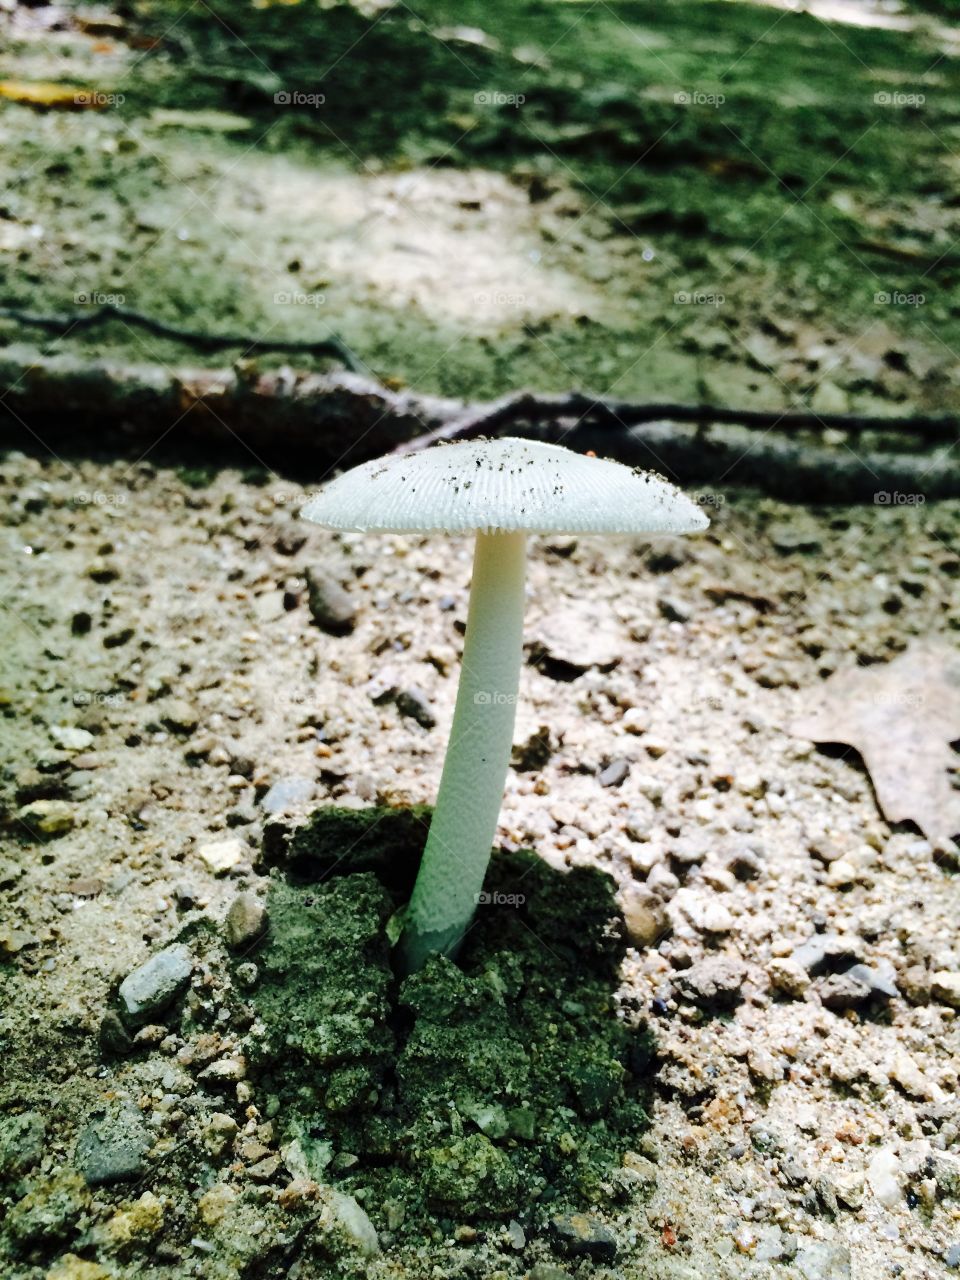 A shell like mushroom